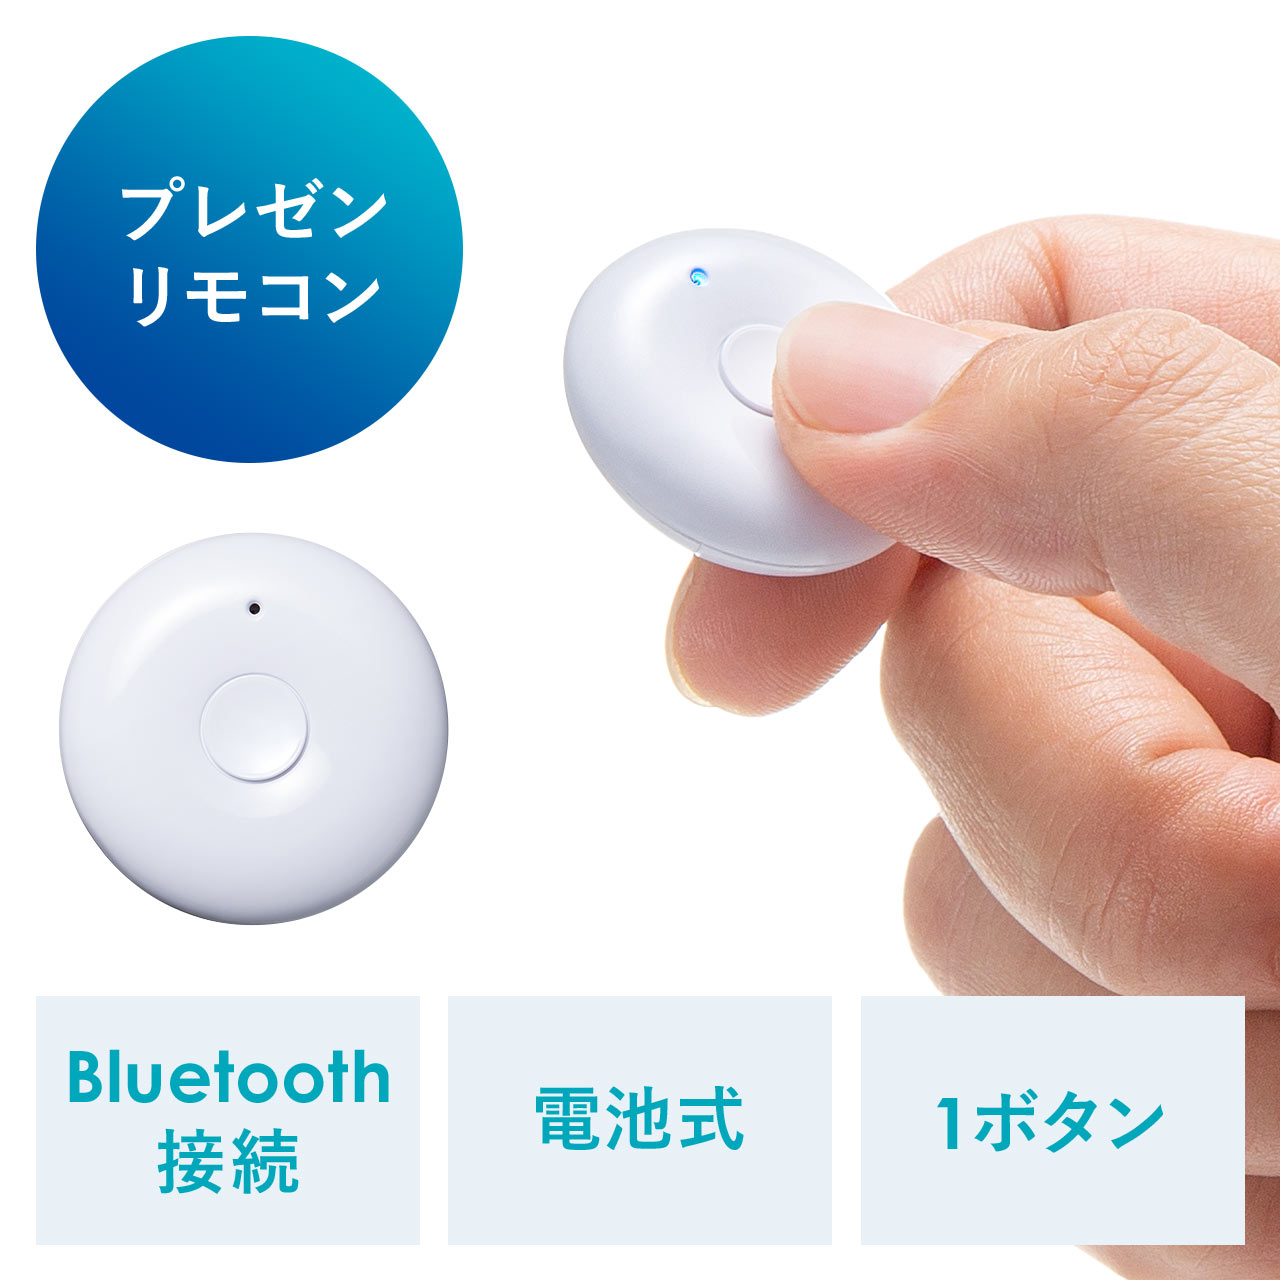 プレゼンリモコン Bluetooth接続 ワンボタン パワポリモコン 200-LPP045の販売商品 通販ならサンワダイレクト